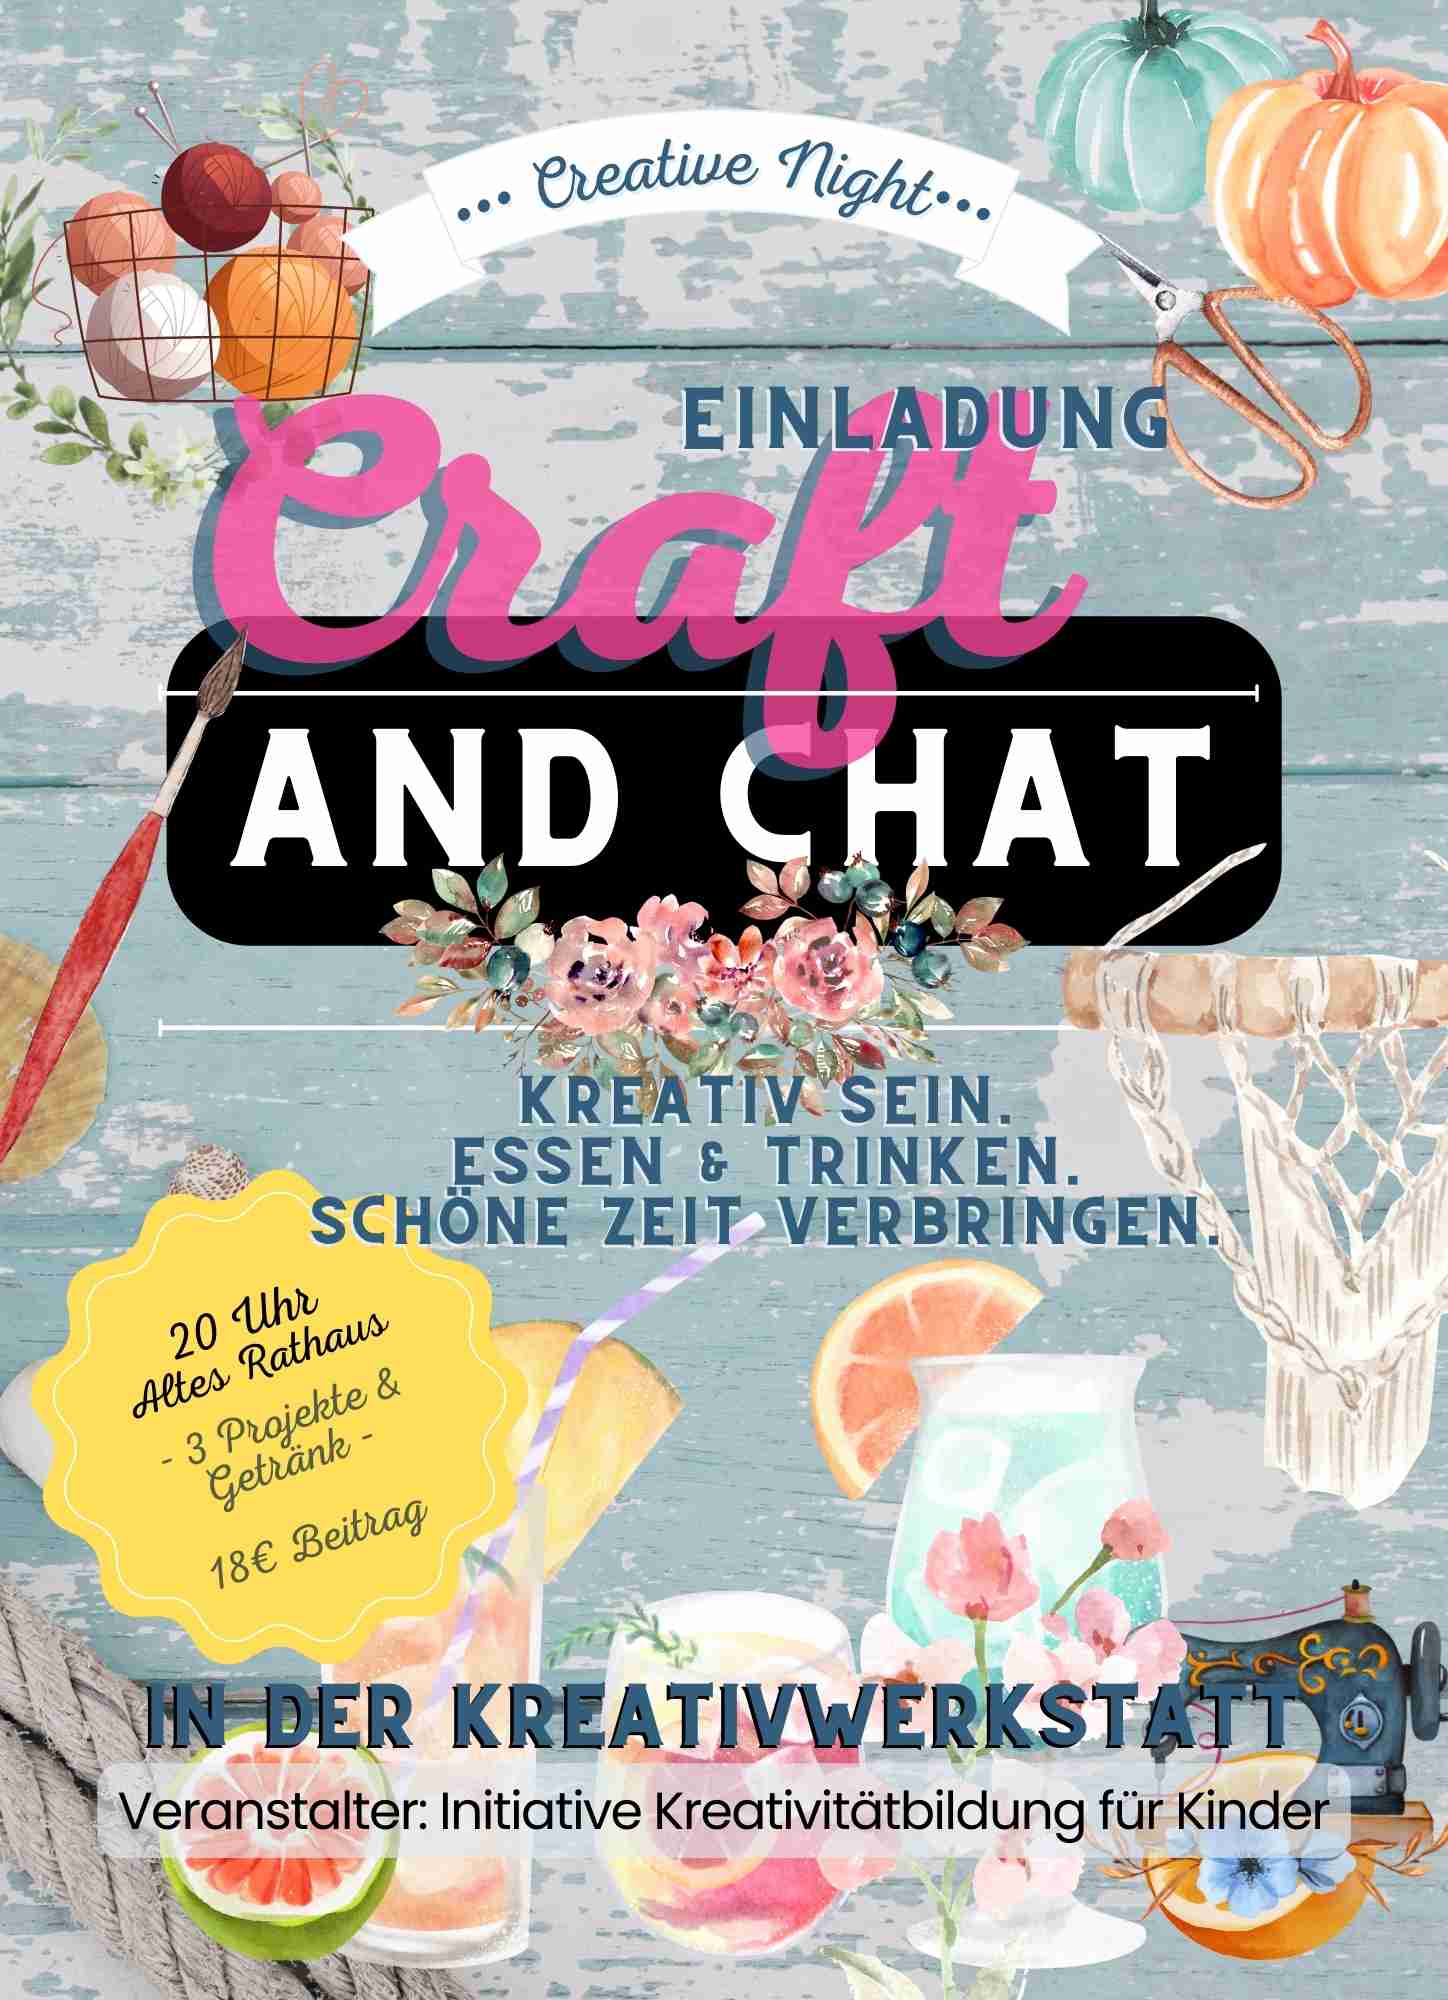 Craft and Chat Kreativwerkstatt Gechingen